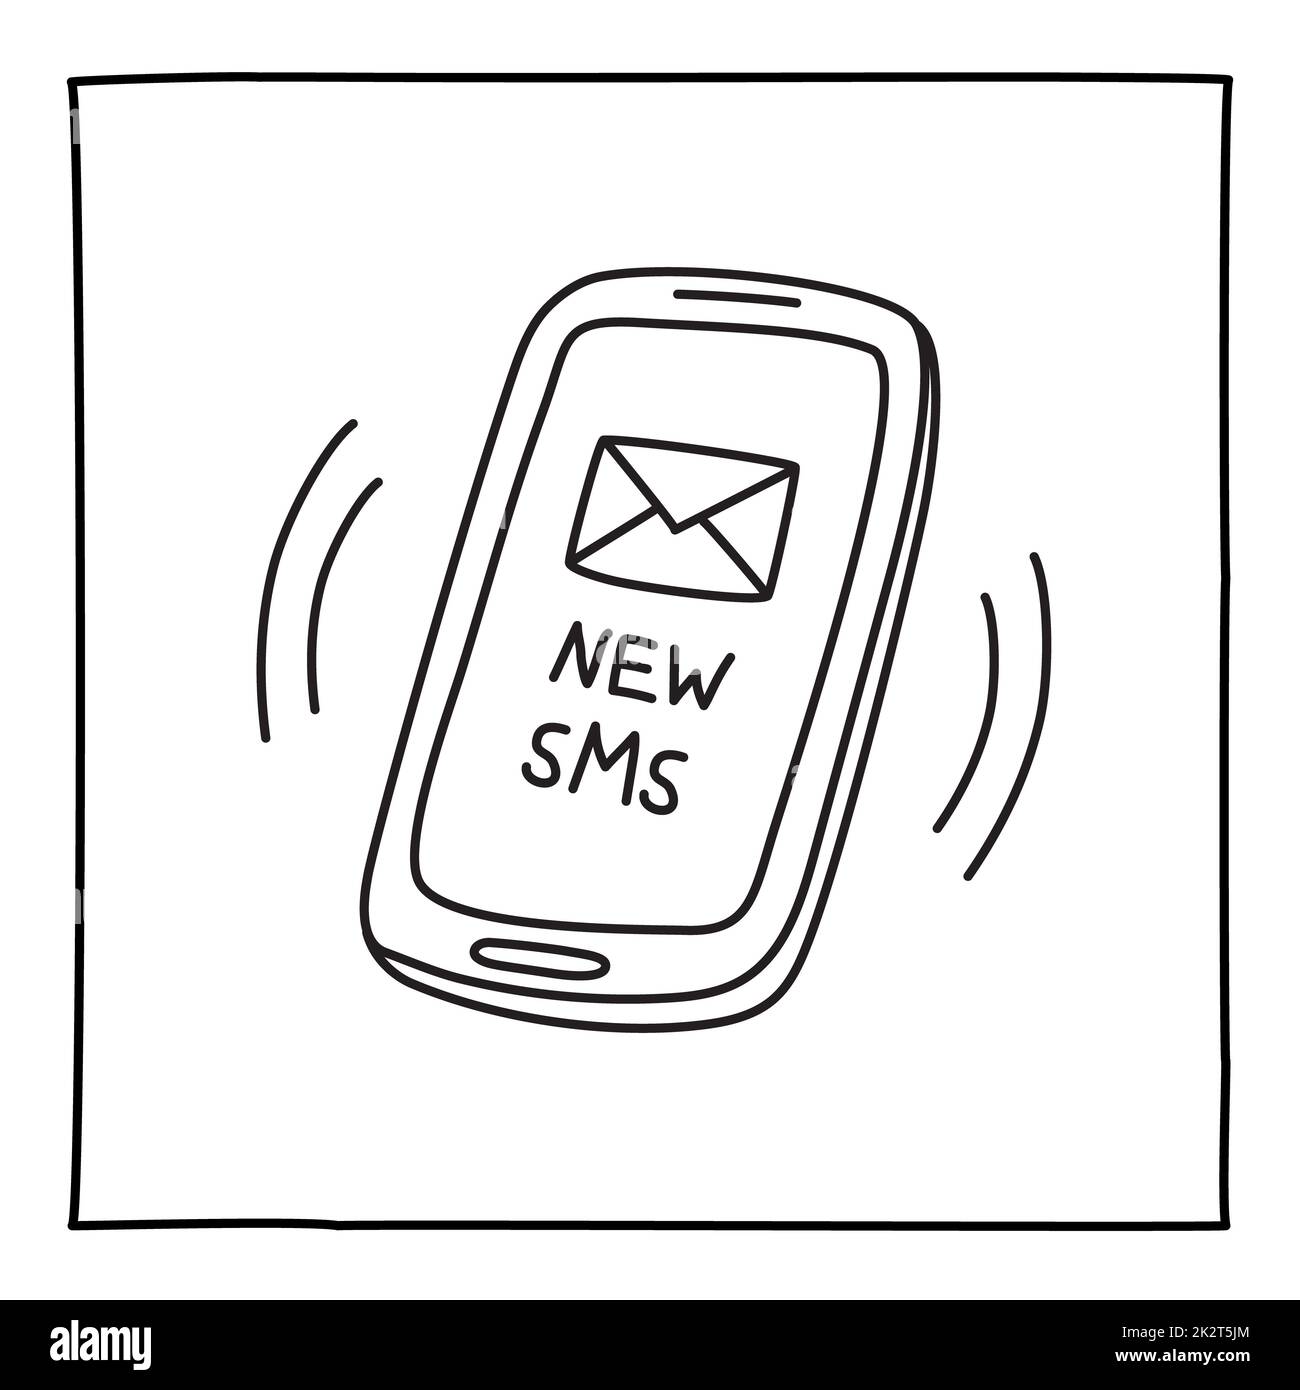 Doodle NOUVELLE icône SMS téléphone mobile main dessinée avec une ligne mince Banque D'Images